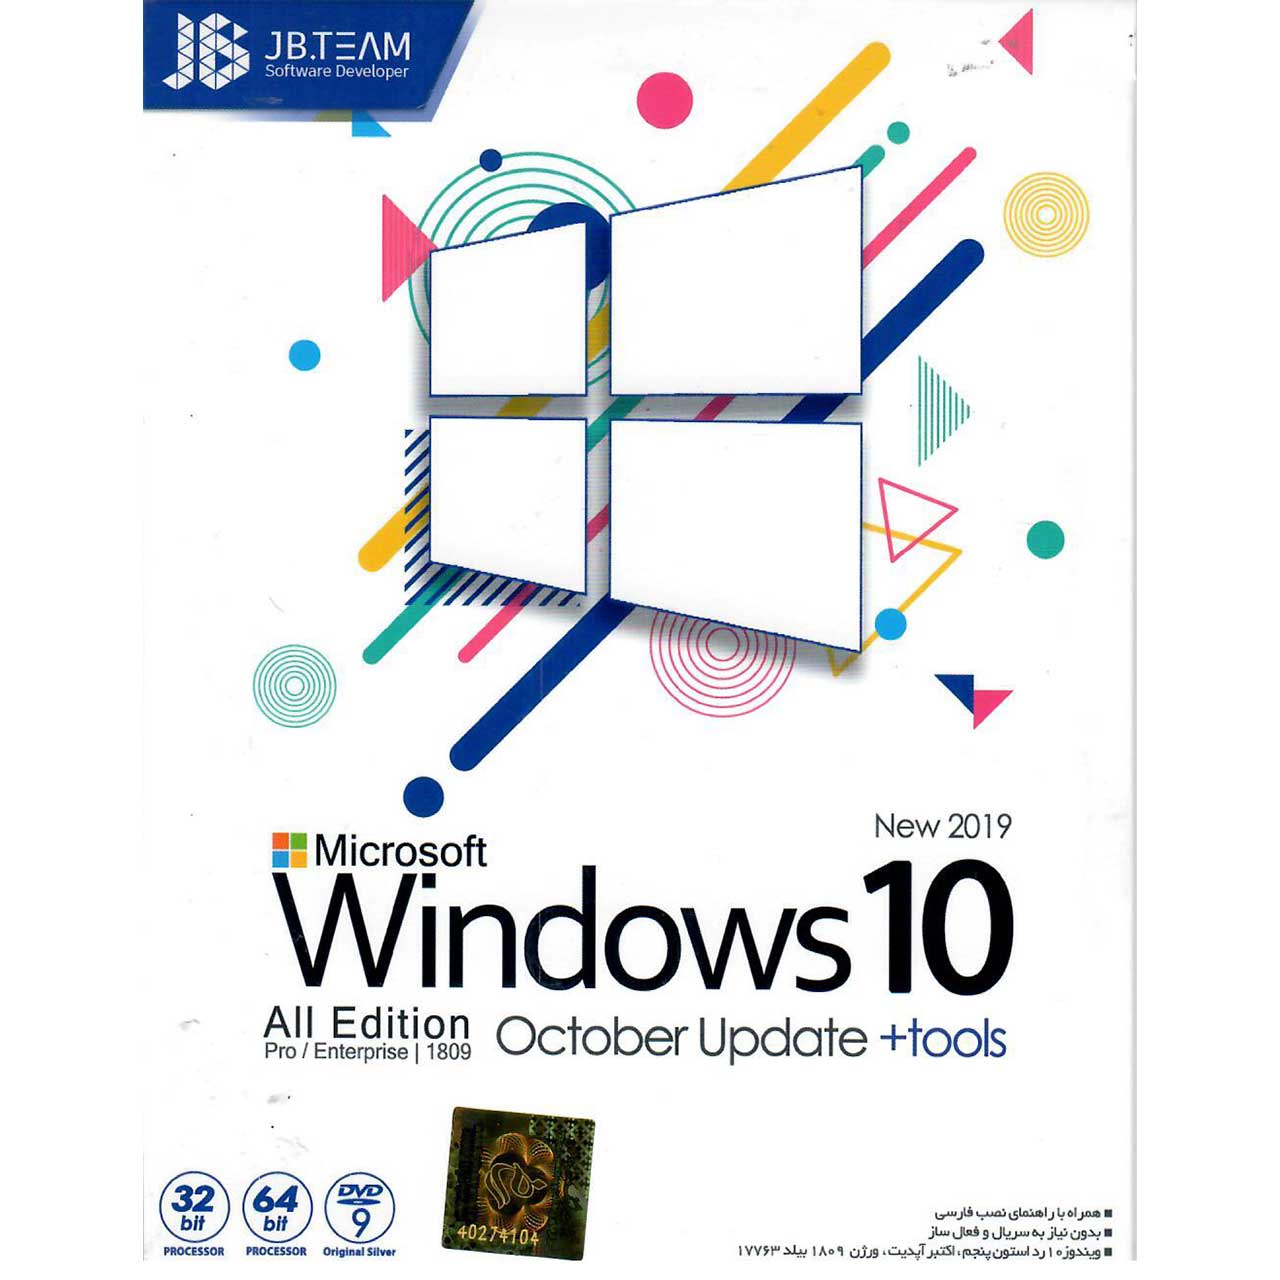 سیستم عامل windows 10 New 2019  نشر جی بی تیم